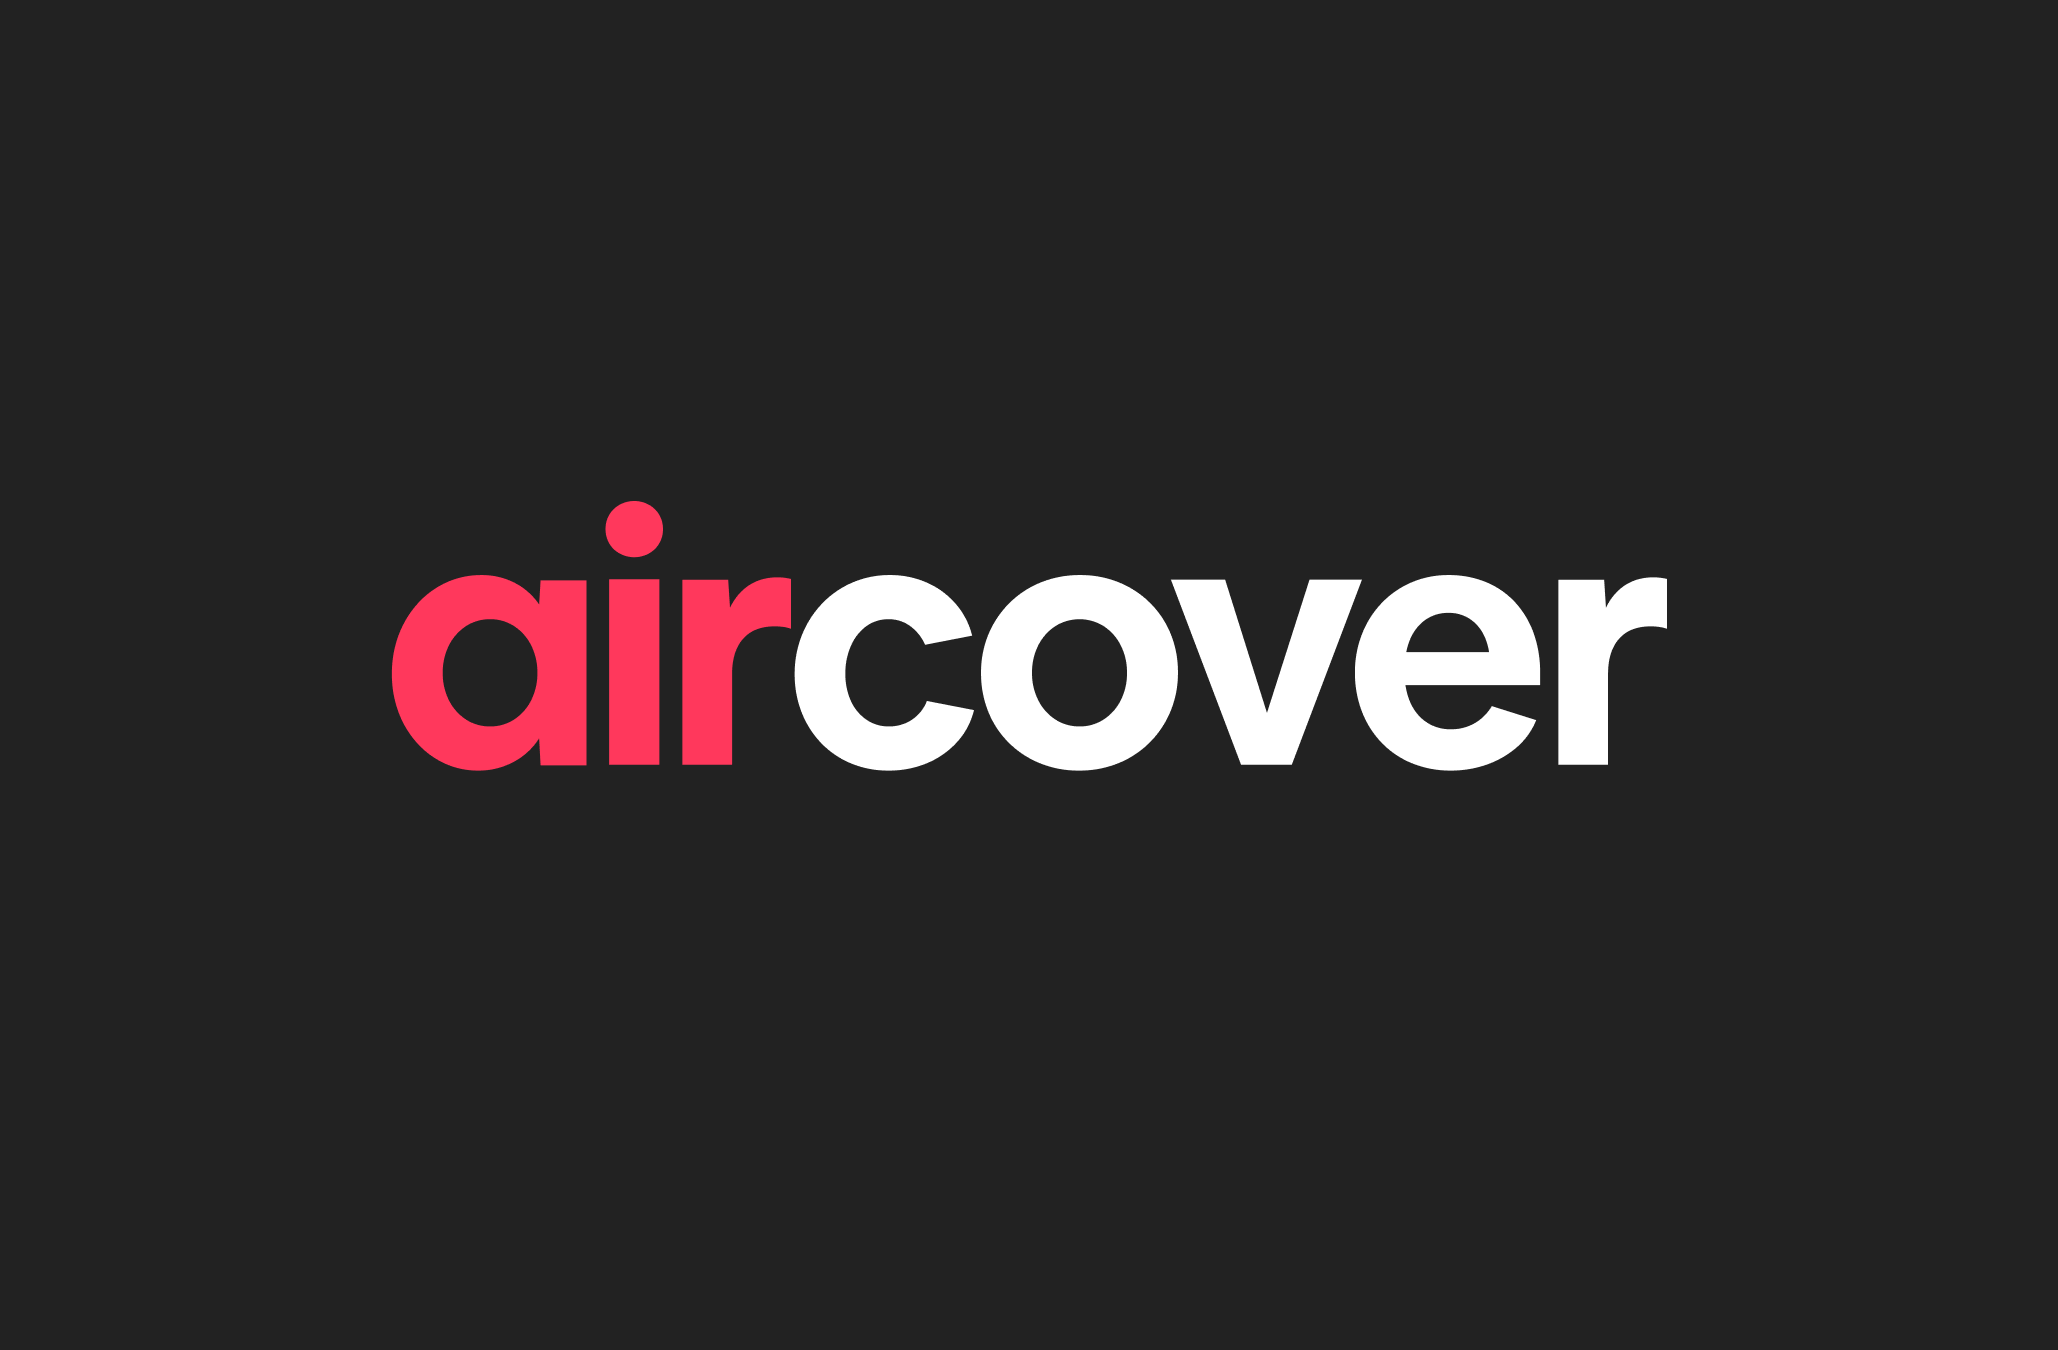 Le logo d'AirCover en lettres rouges et blanches sur un fond noir.